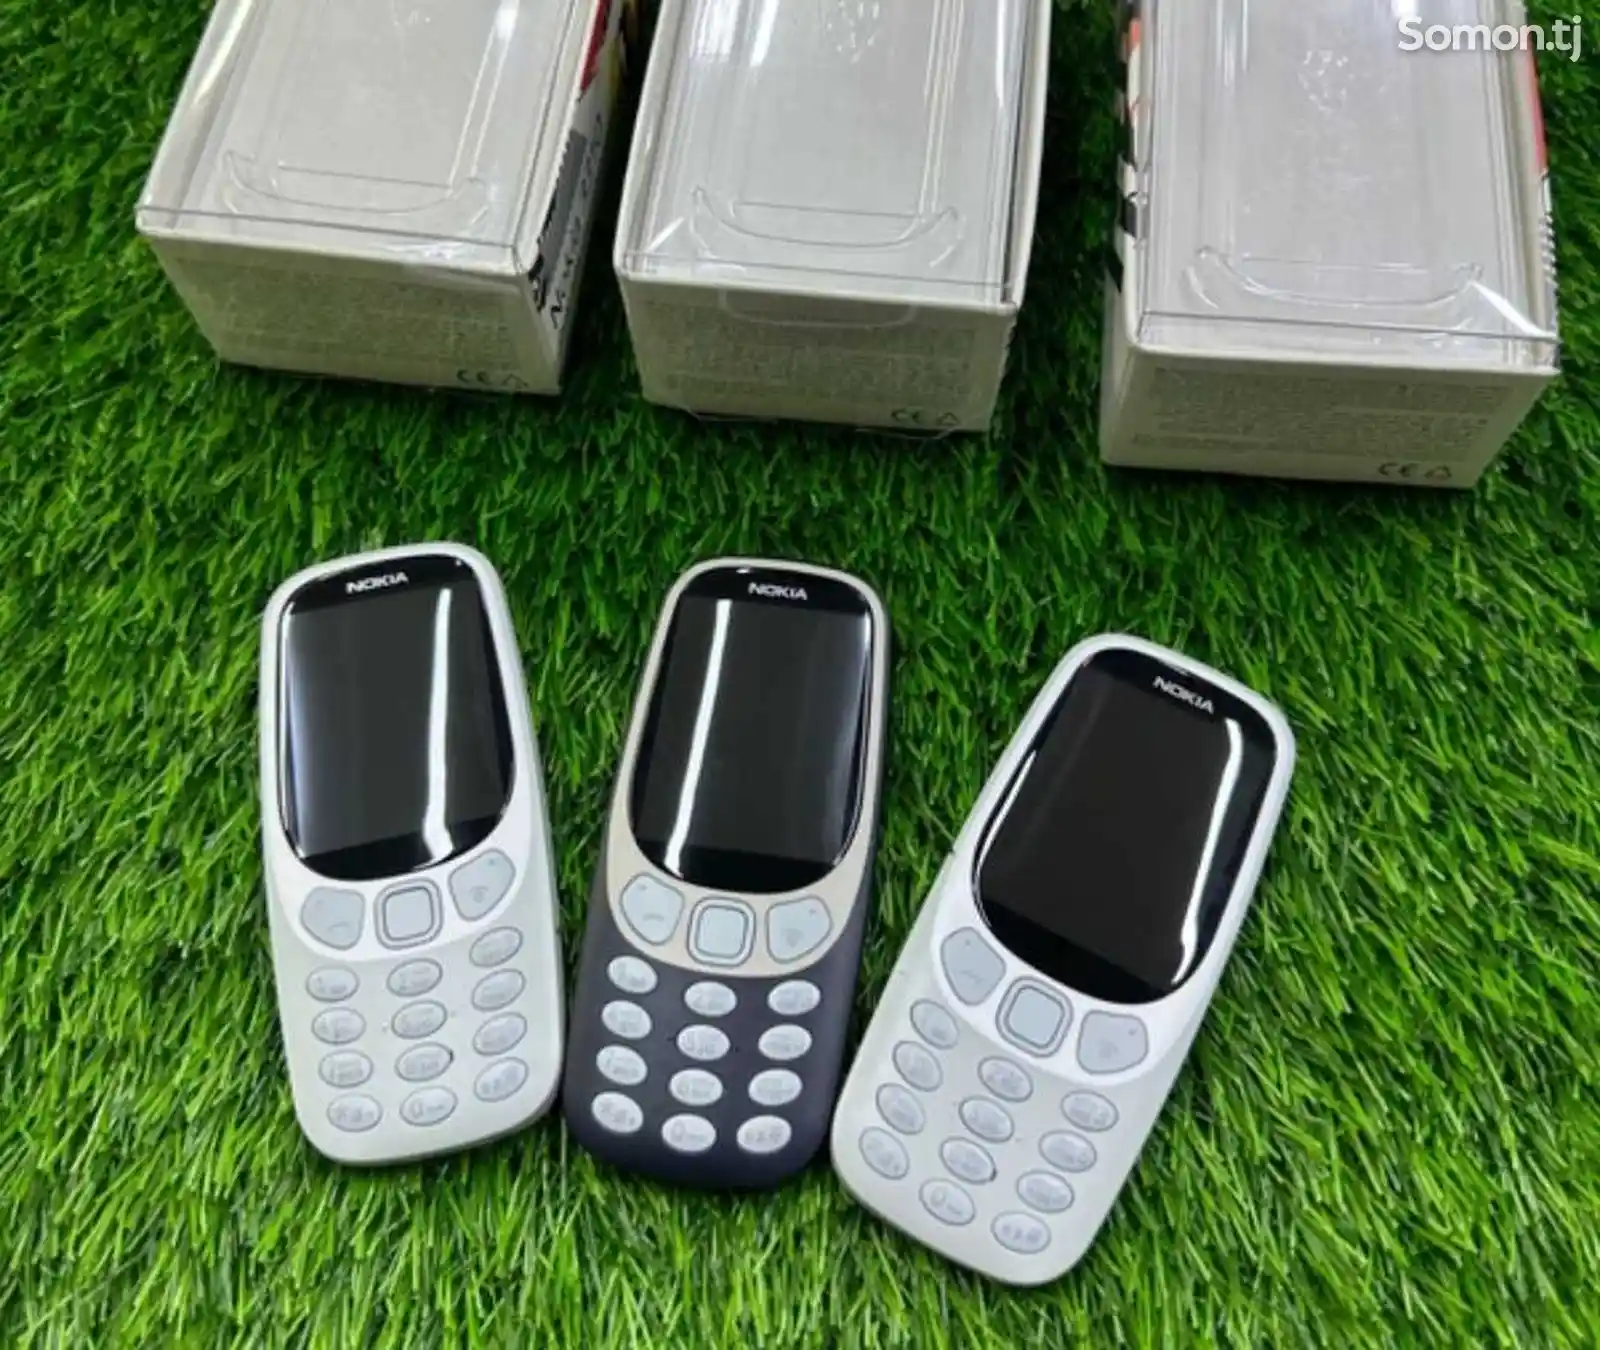 Nokia 3310-5